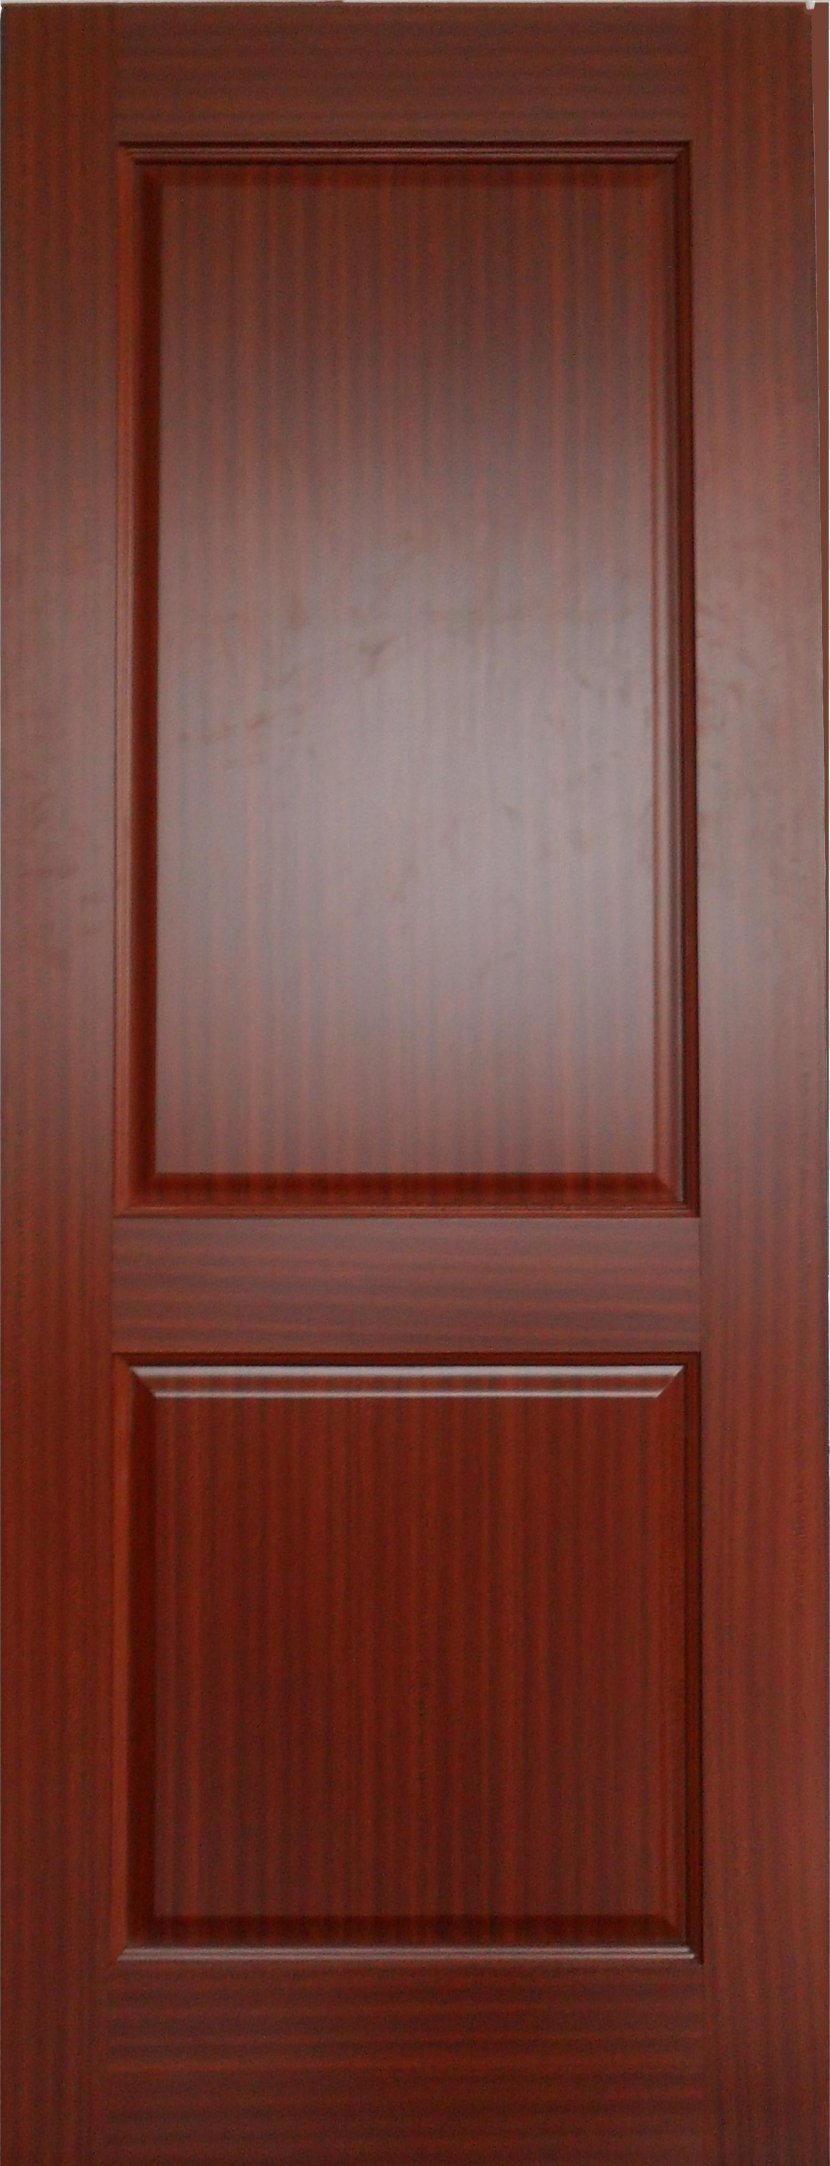 Magazin Dverey Door Glass Plywood Hardwood - Window Transparent PNG